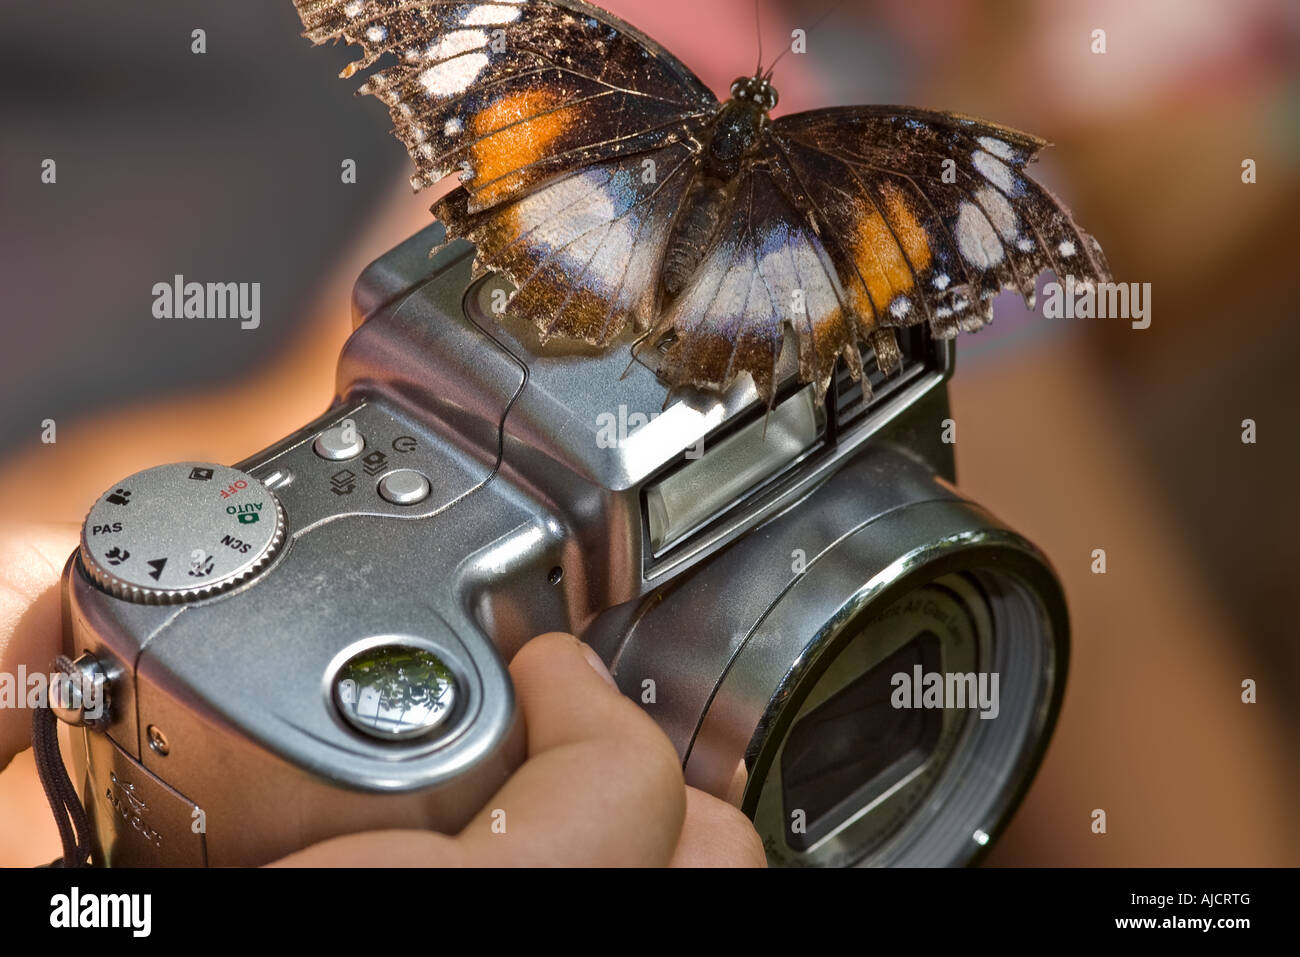 Un papillon est perché sur un appareil photo Banque D'Images